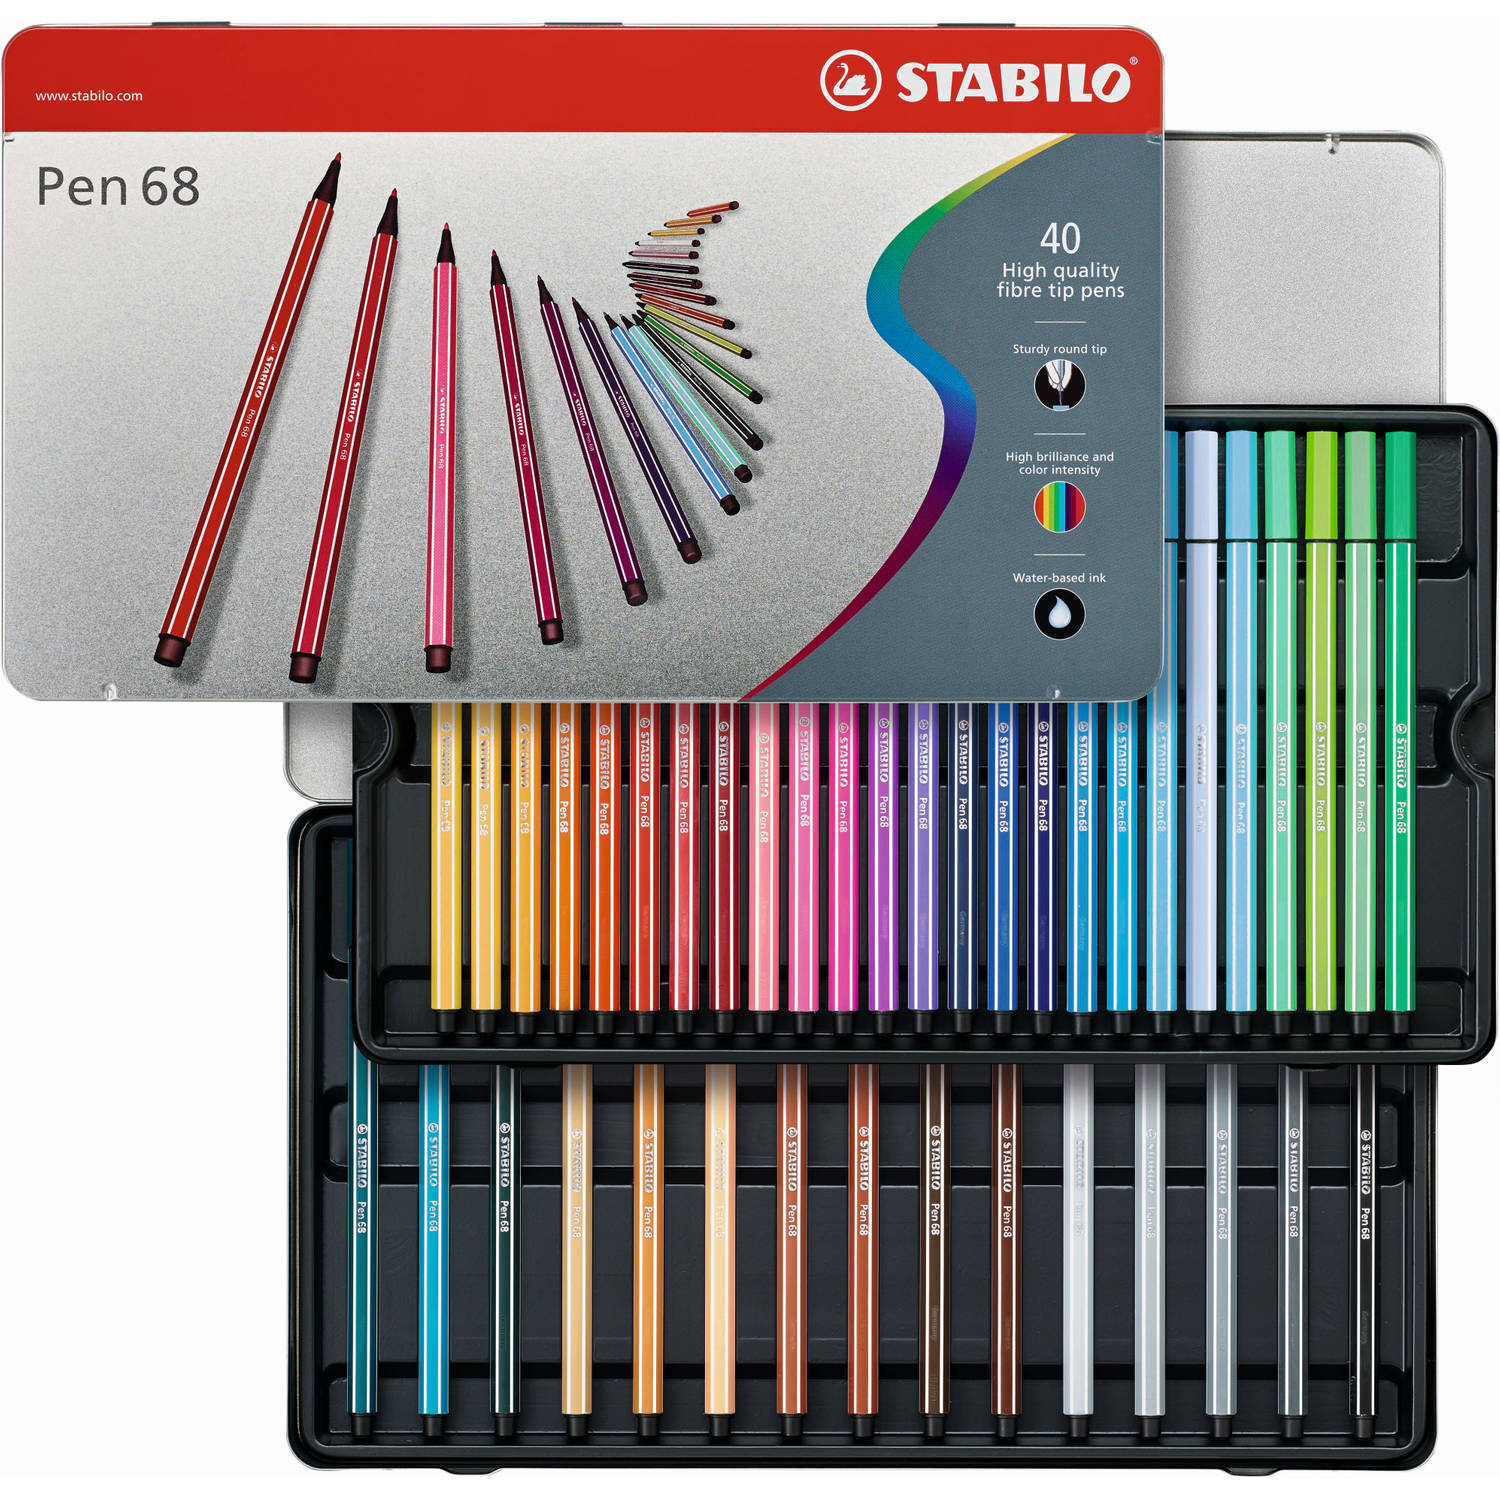 Viltstiften Stabilo pen 68 metalen doos - 40 stuks - Viltstift Stabilo